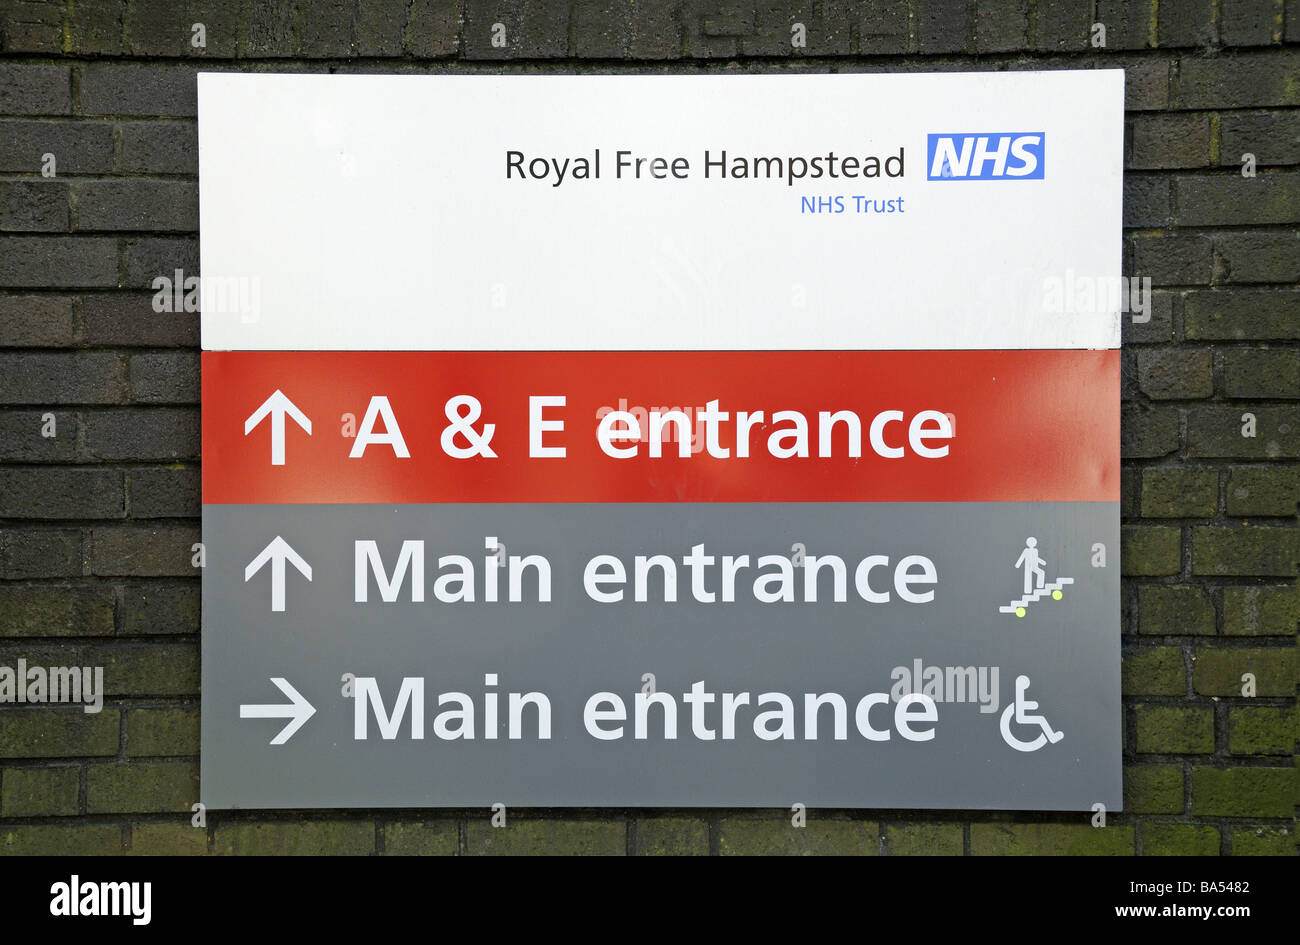 Conseil de direction de l'hôpital Royal Free Hampstead London England UK Banque D'Images